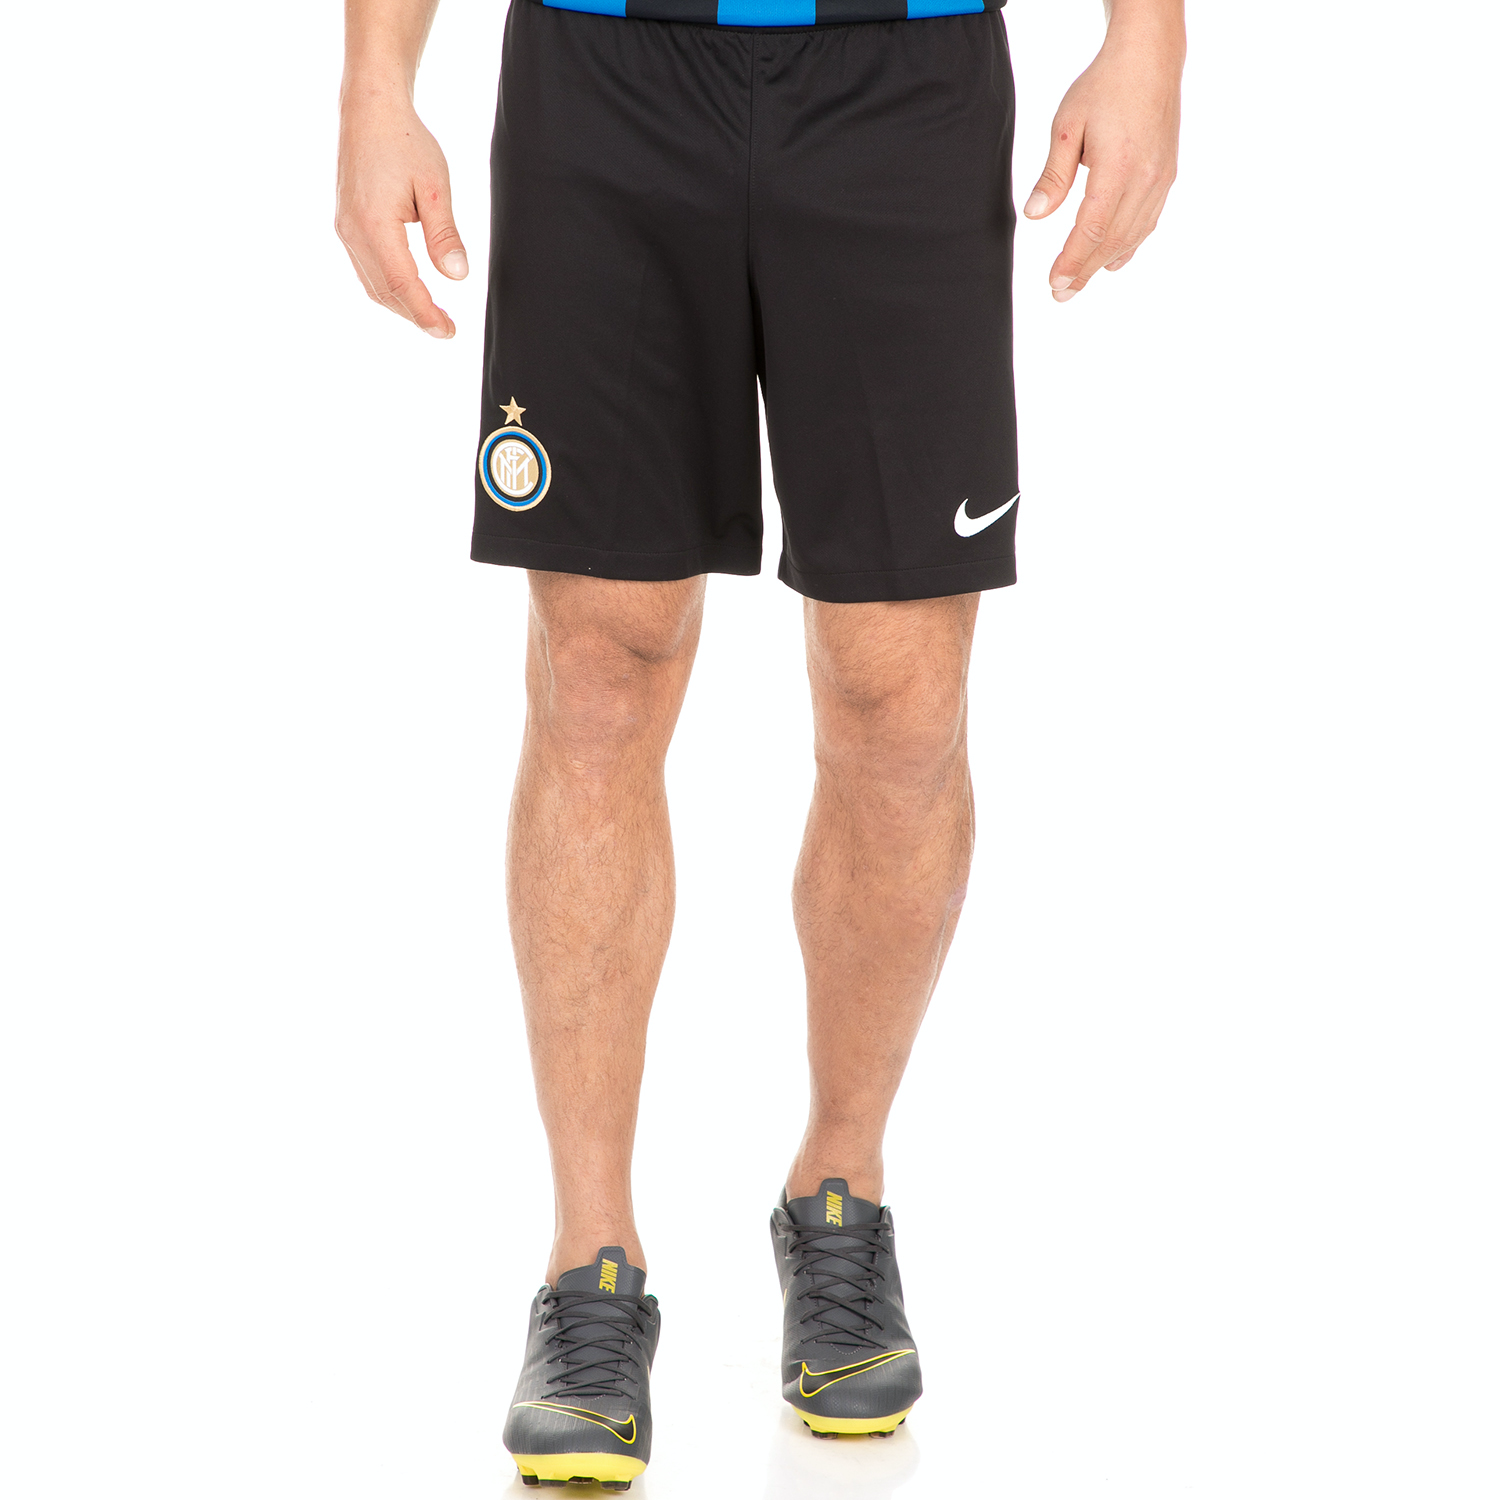 Ανδρικά/Ρούχα/Σορτς-Βερμούδες/Αθλητικά NIKE - Ανδρικό ποδοσφαιρικό σορτς NIKE Inter Milan μπλε